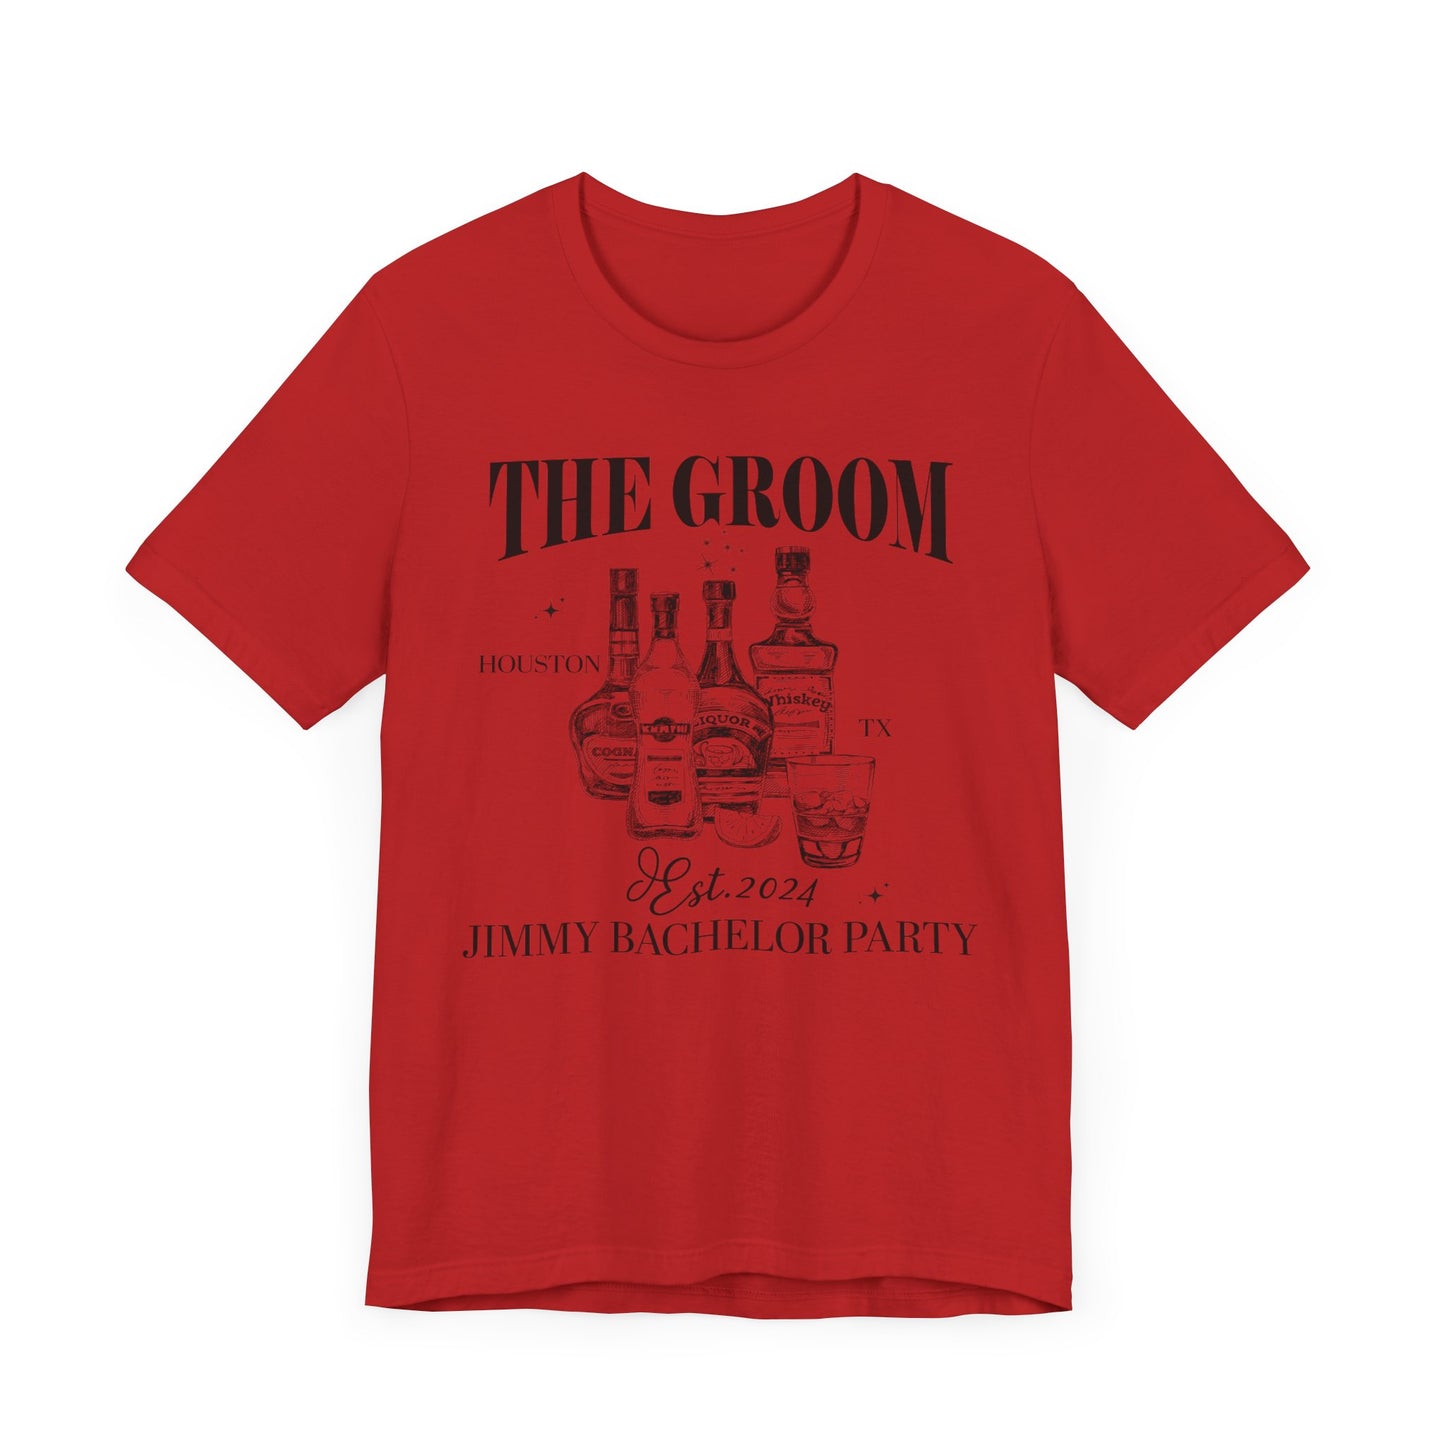 The Groom Bachelor Party Shirts, Groomsmen Shirts, Custom Bachelor Party Gifts, Funny Bachelor Shirts, Group Bachelor Shirts, 1 T1555 UK